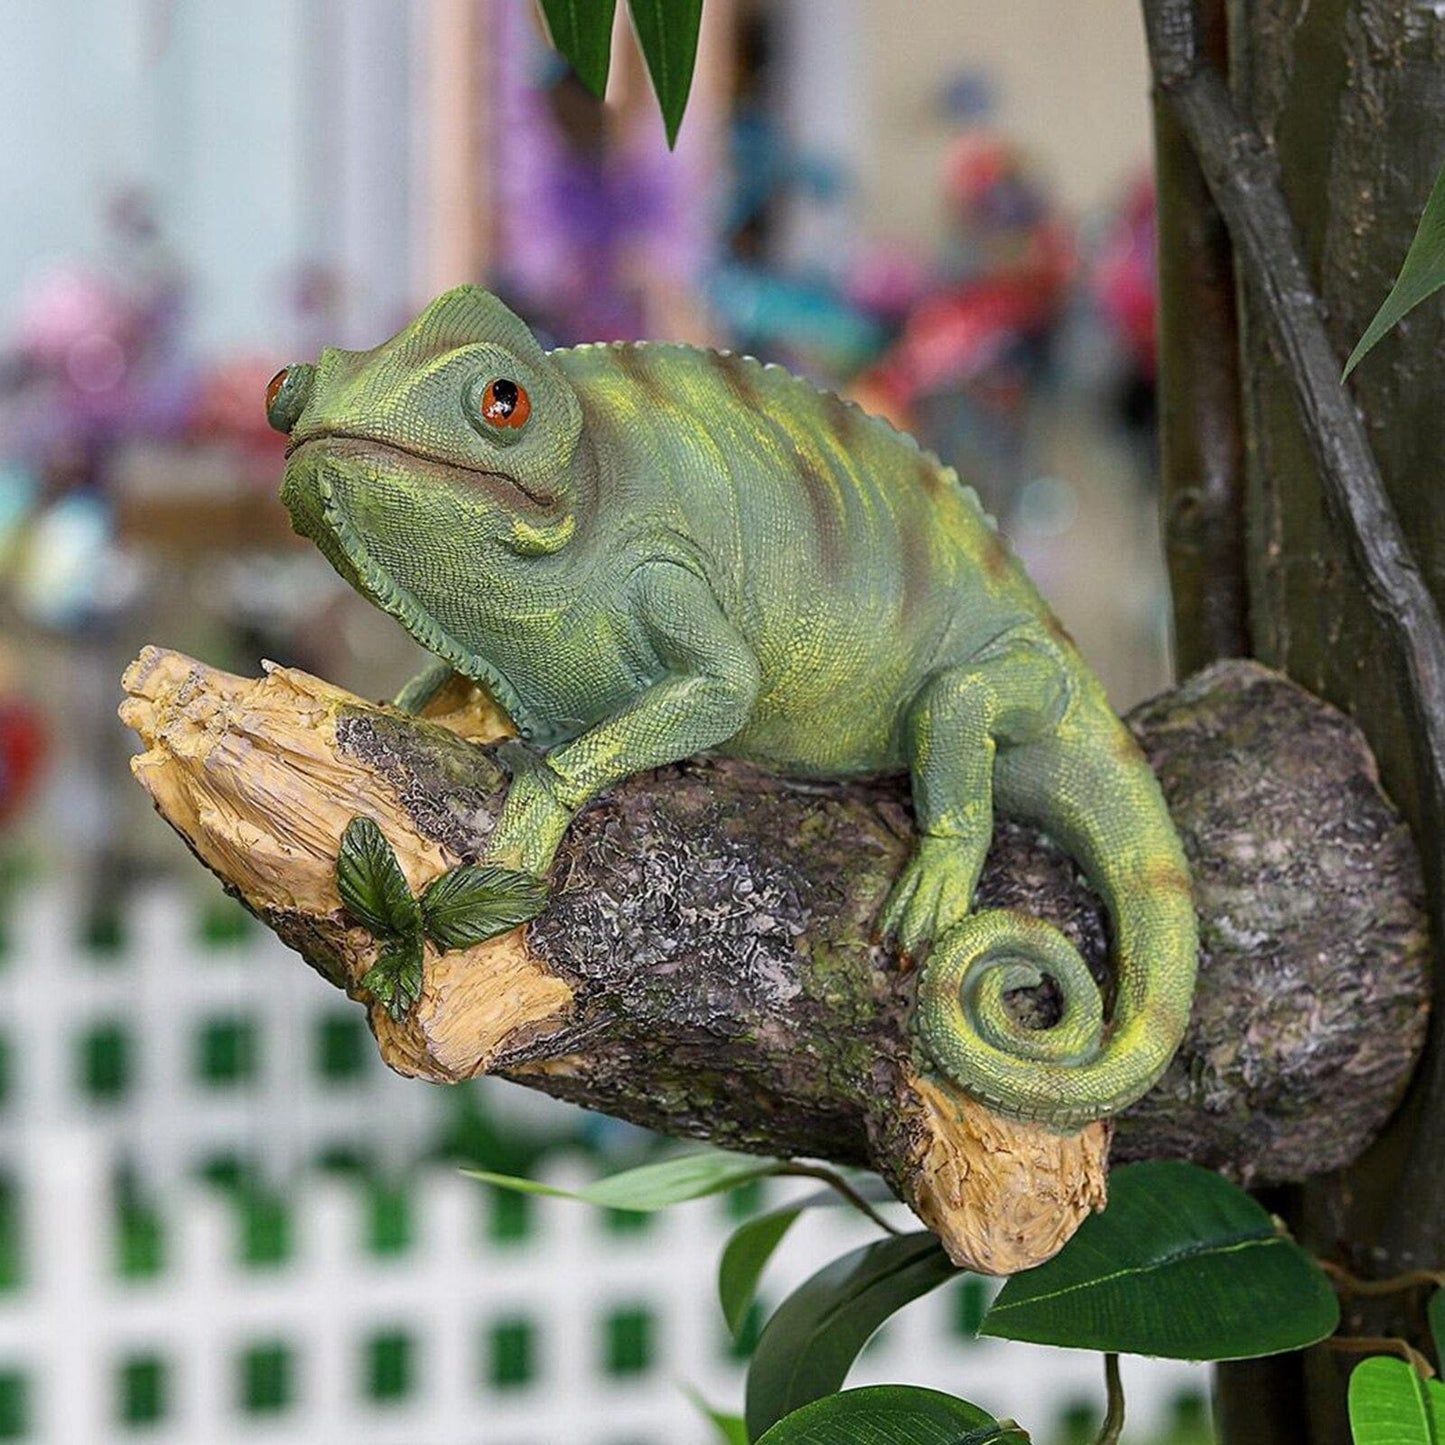 Figurina da camaleonte in resina sull'albero